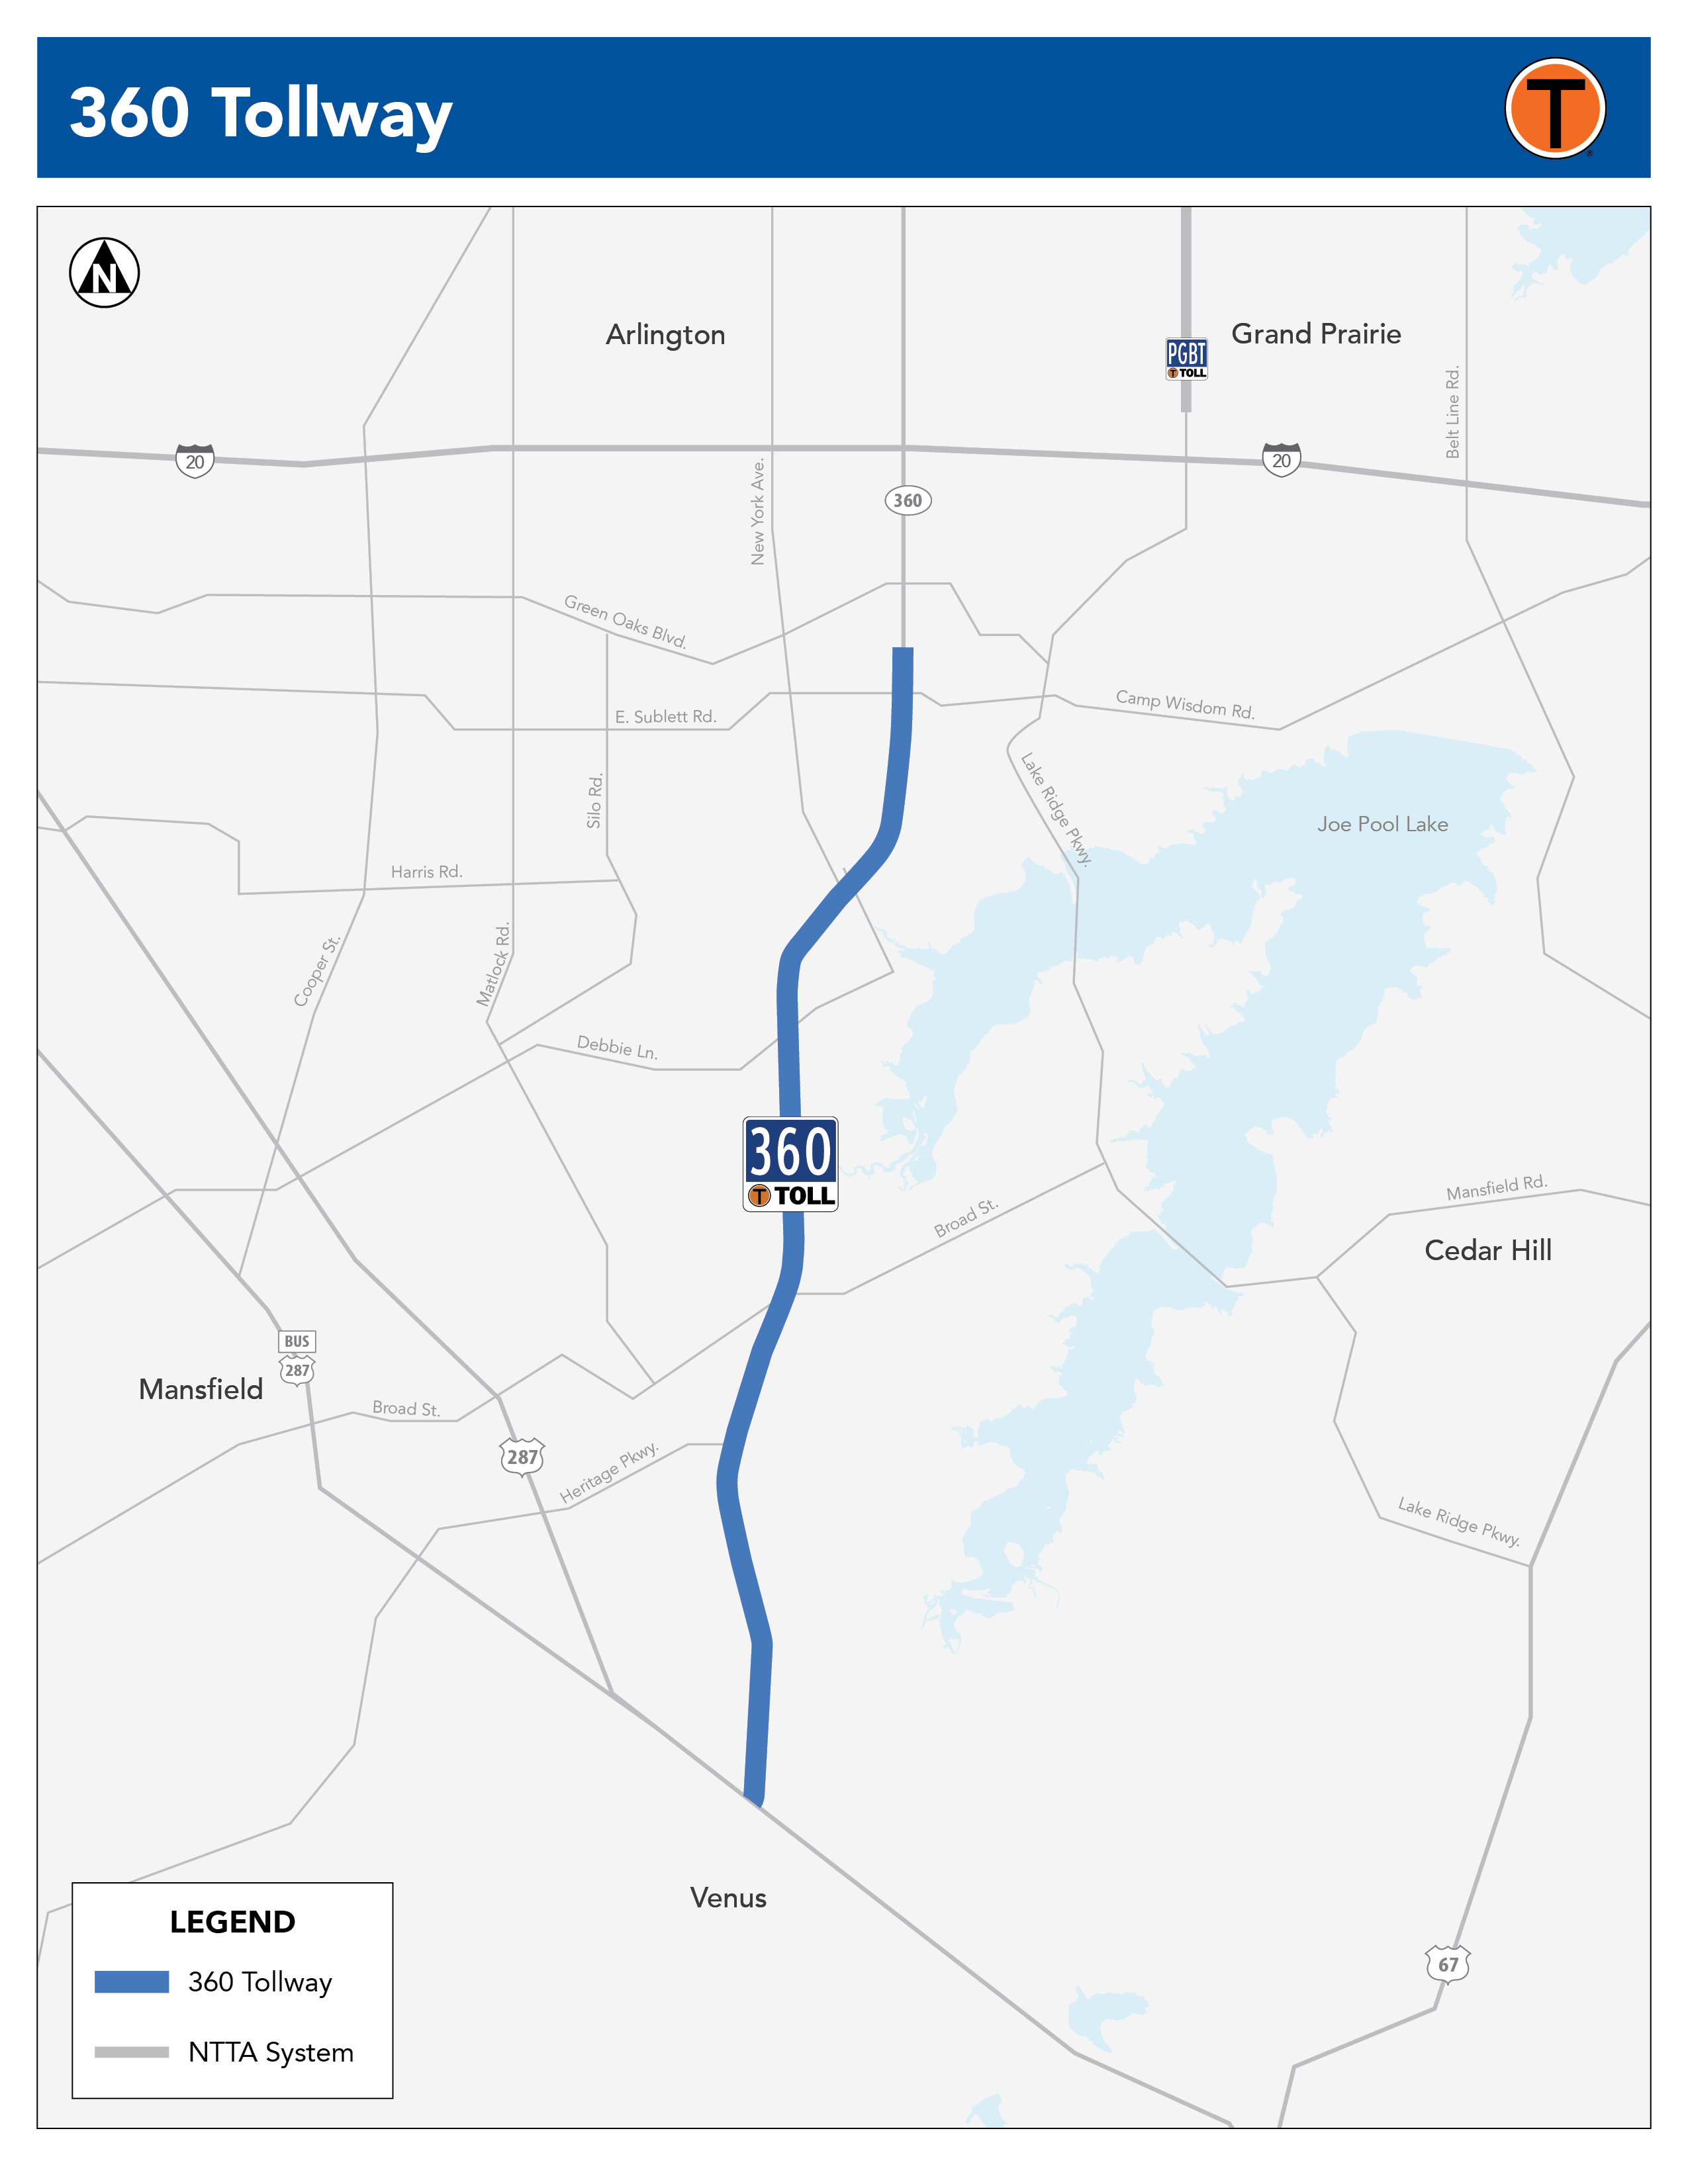 360 Tollway Corridor Map 2022.10.19 